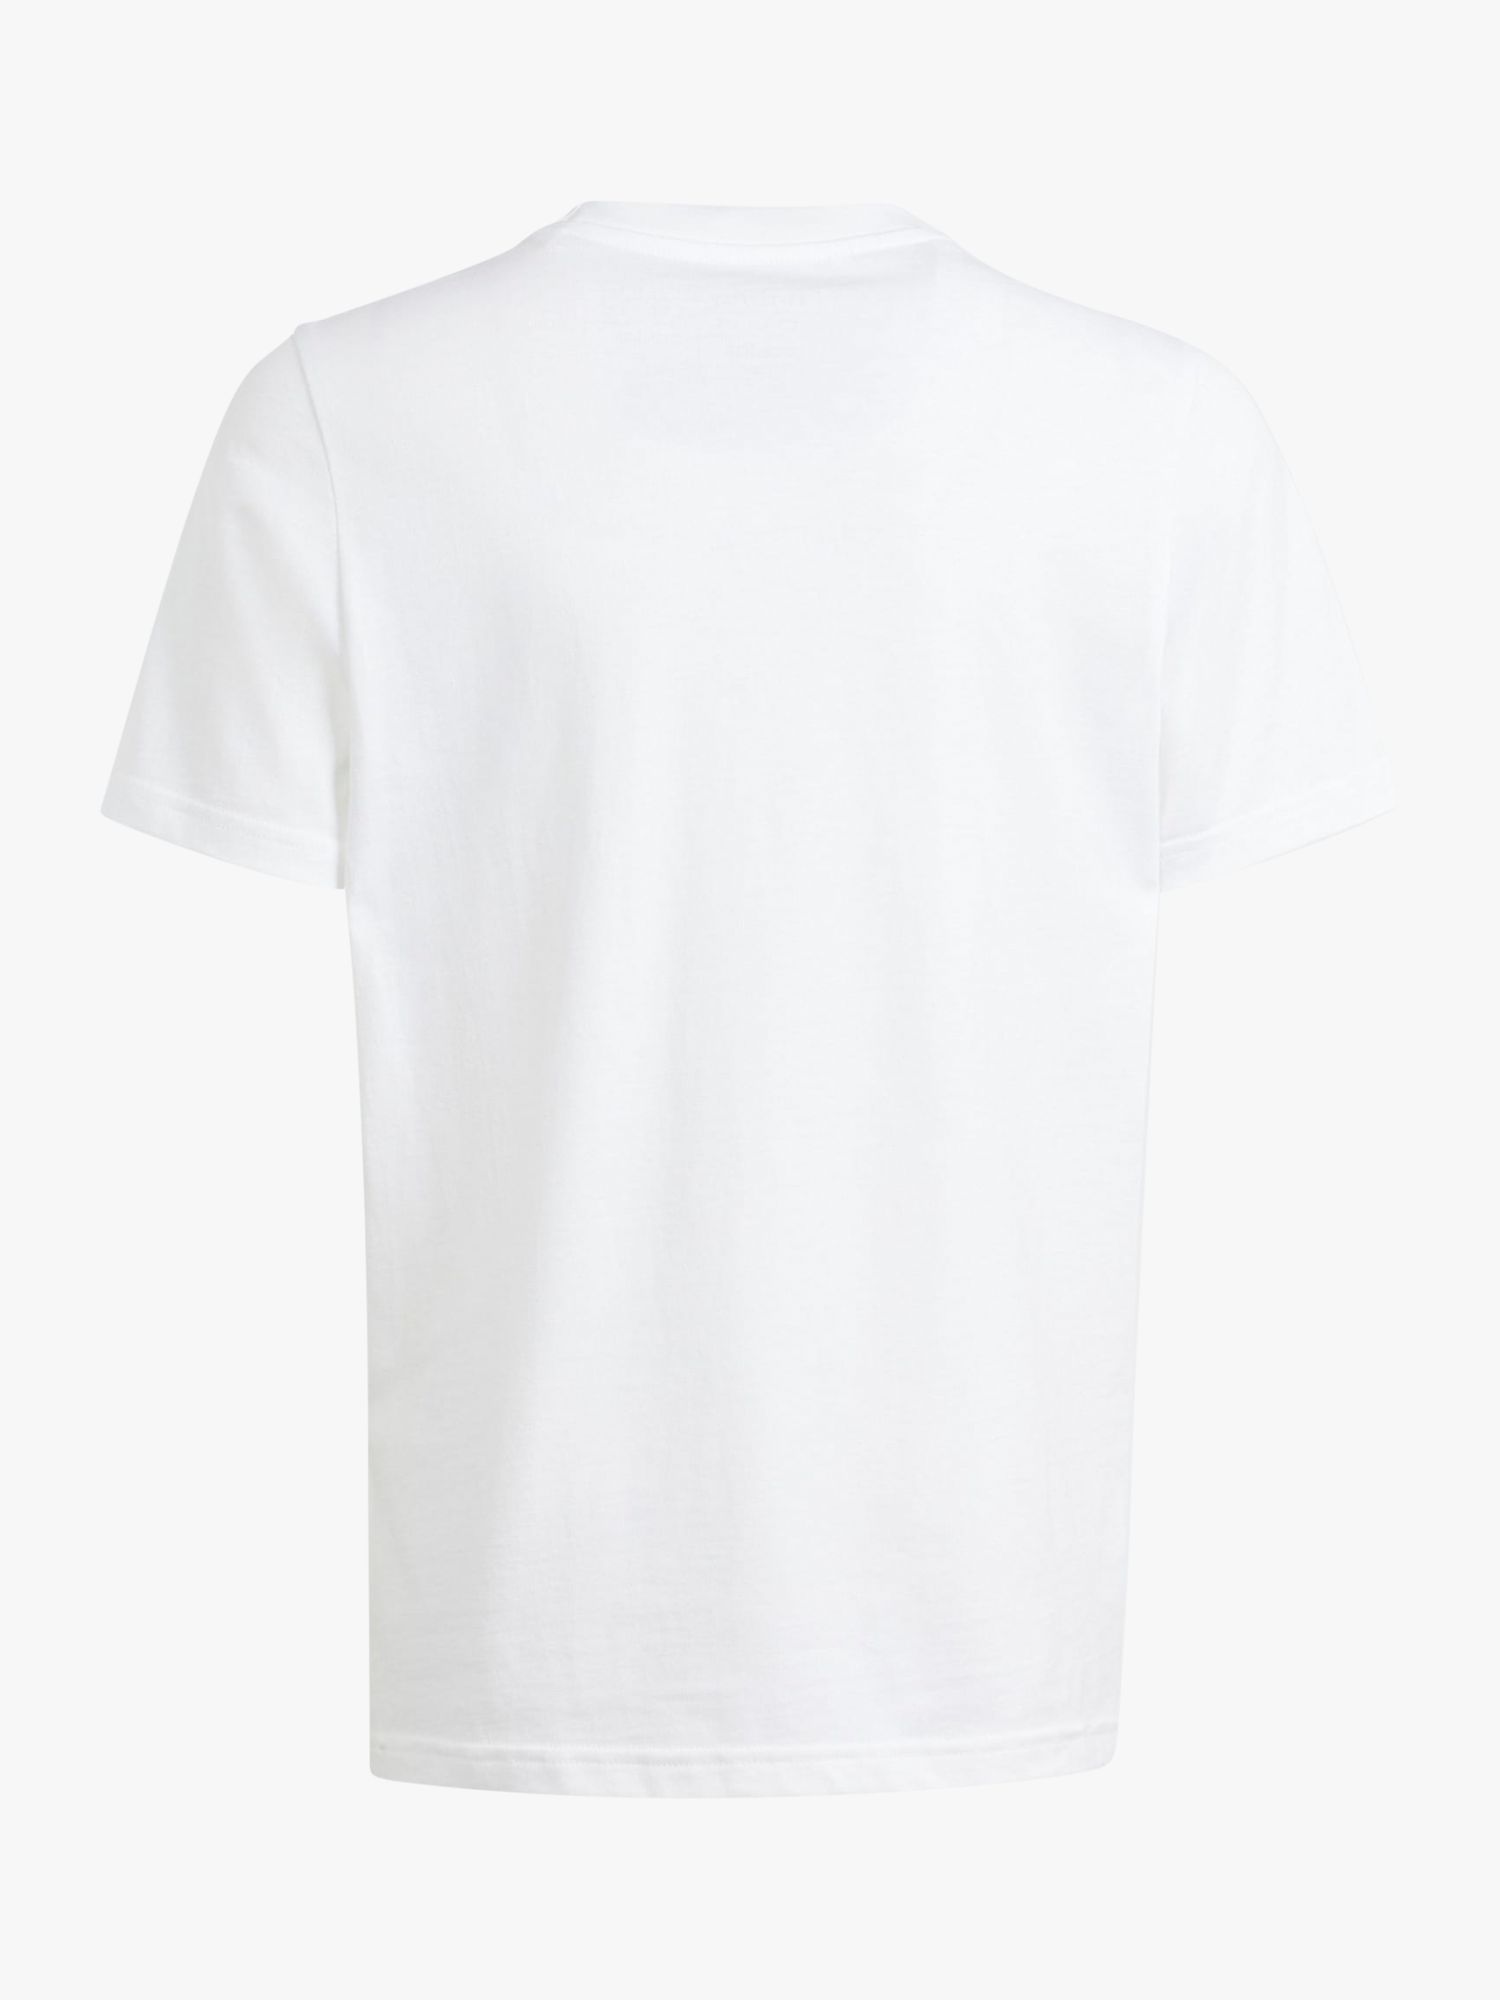 adidas Kids' Camo Logo T-Shirt, White at John Lewis & Partners